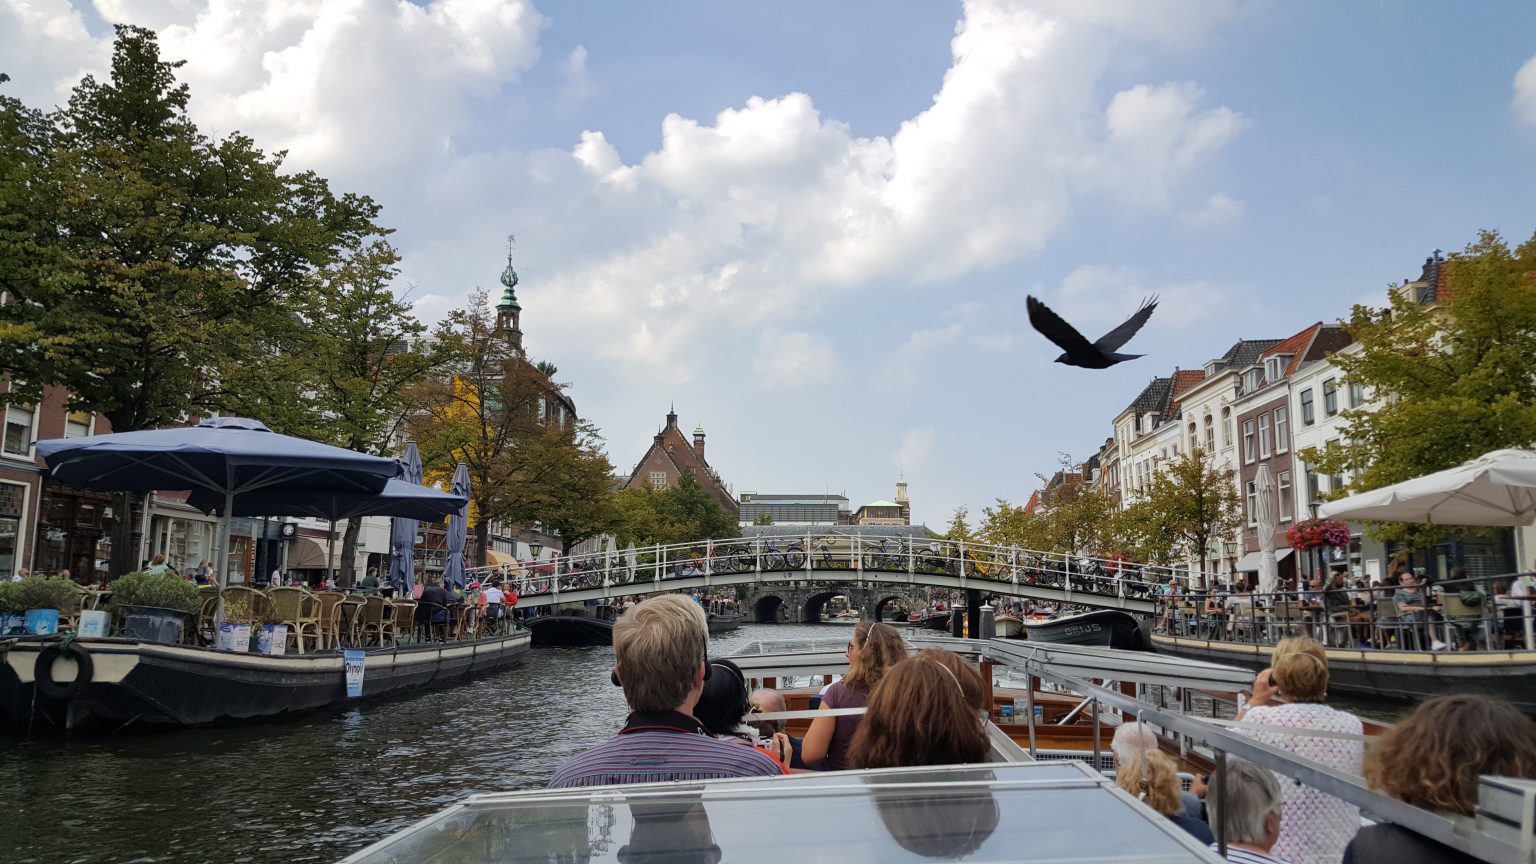 Urlaub In Noordwijk Mit Vielen Aktivitäten An Der Frischen Luft